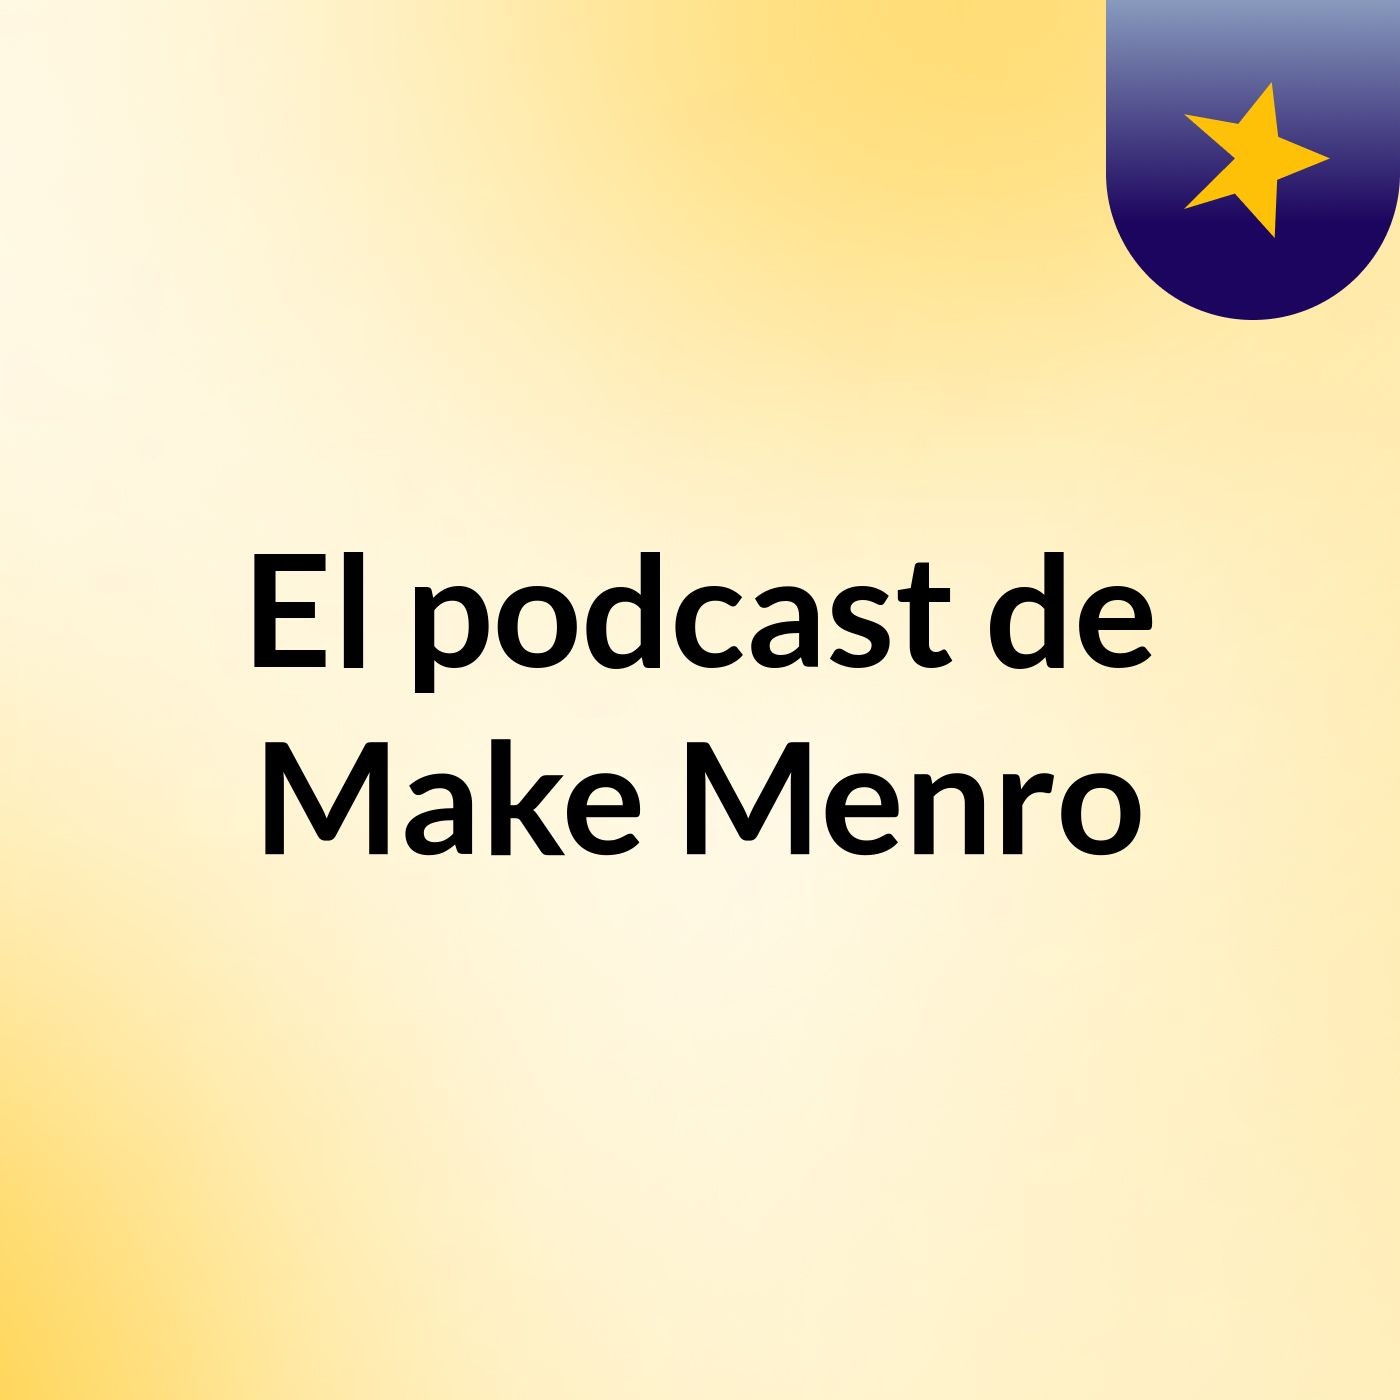 El podcast de Make Menro